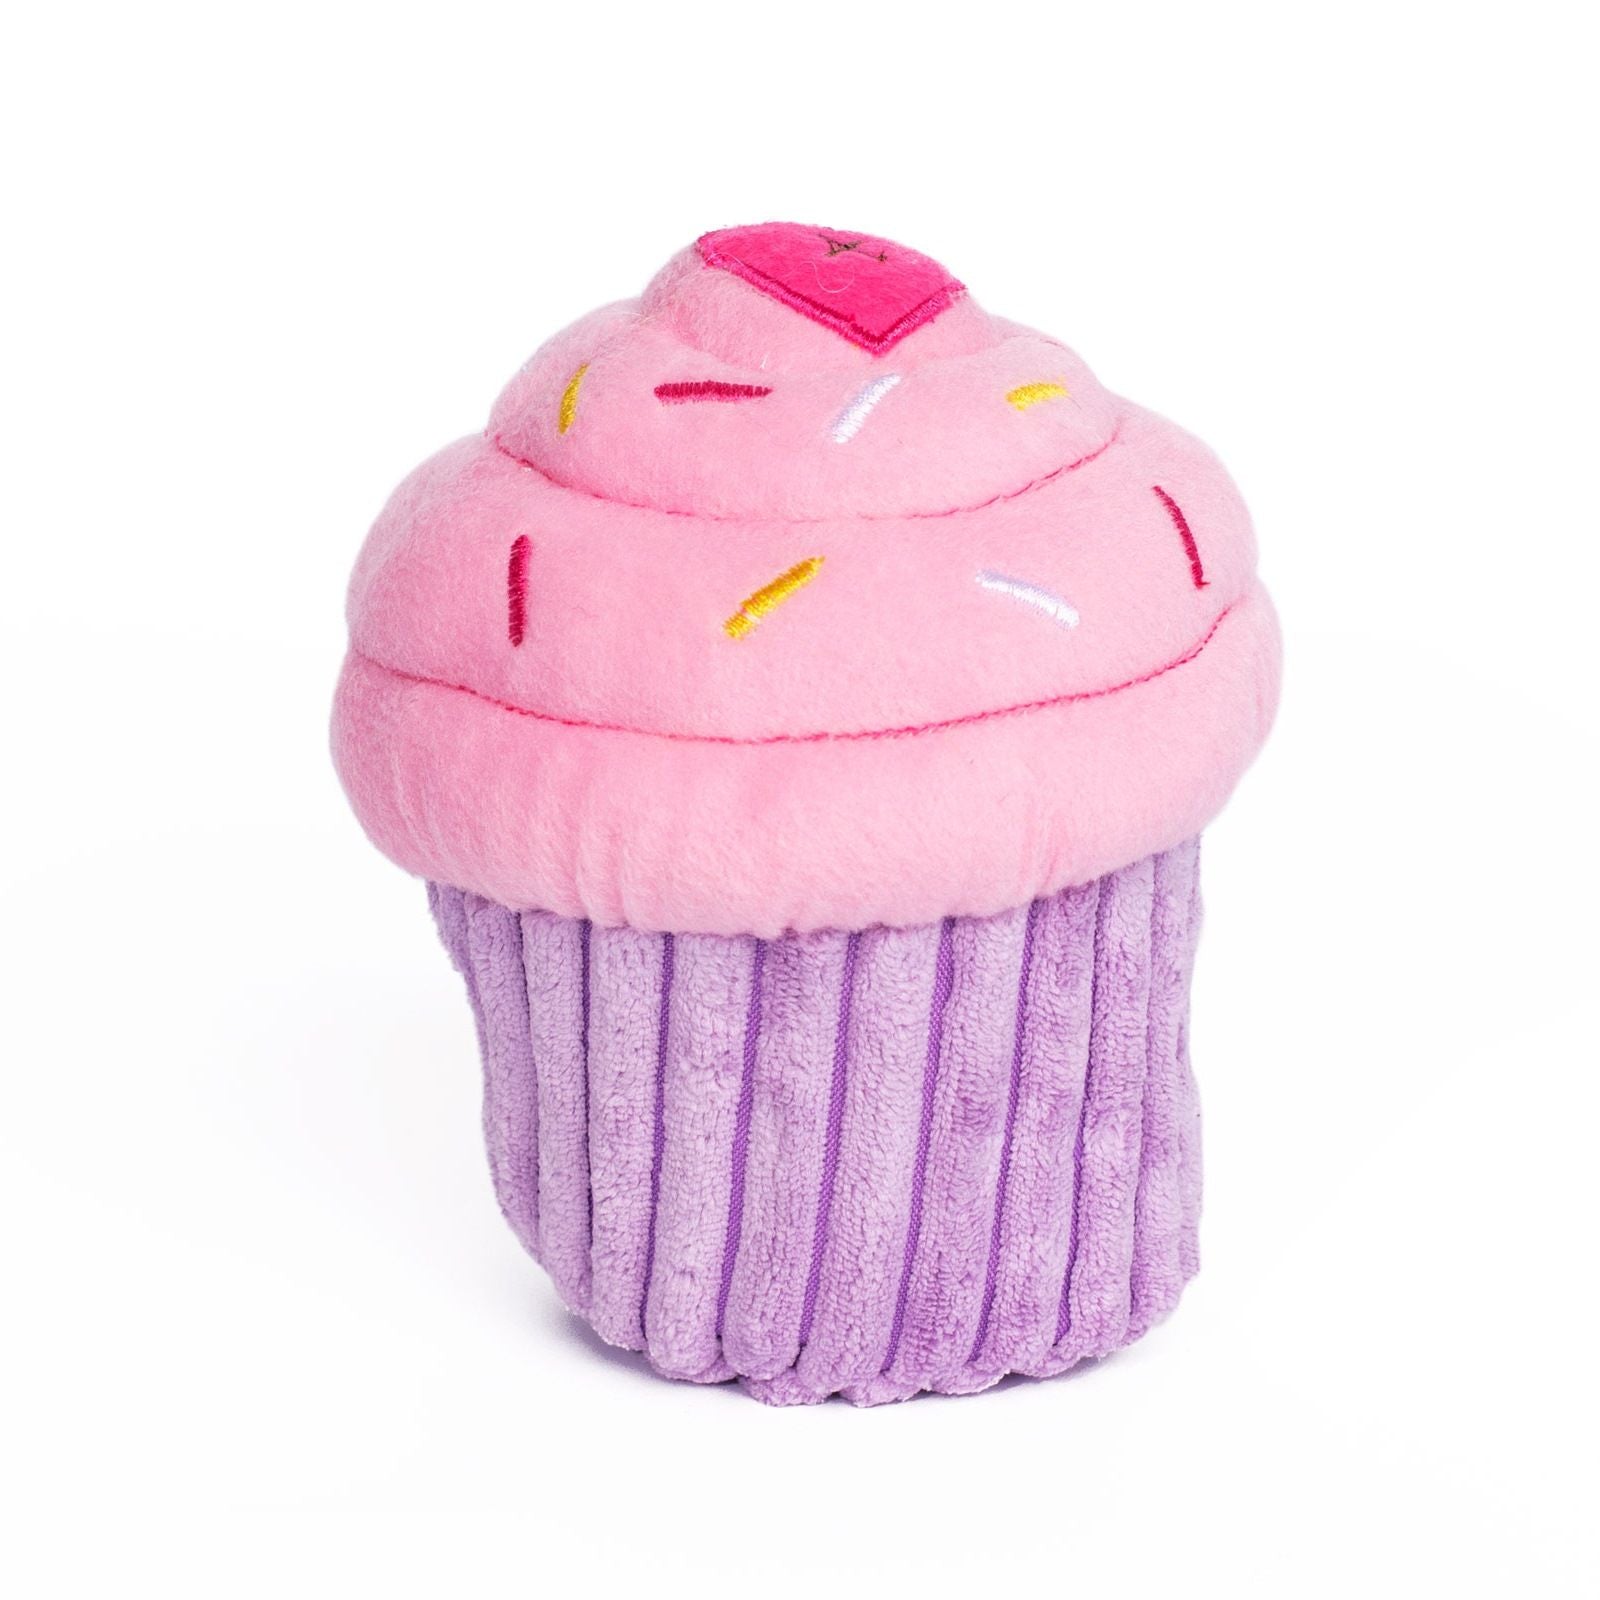 ZippyPaws Cupcake  |  Squeaky Plush Toy